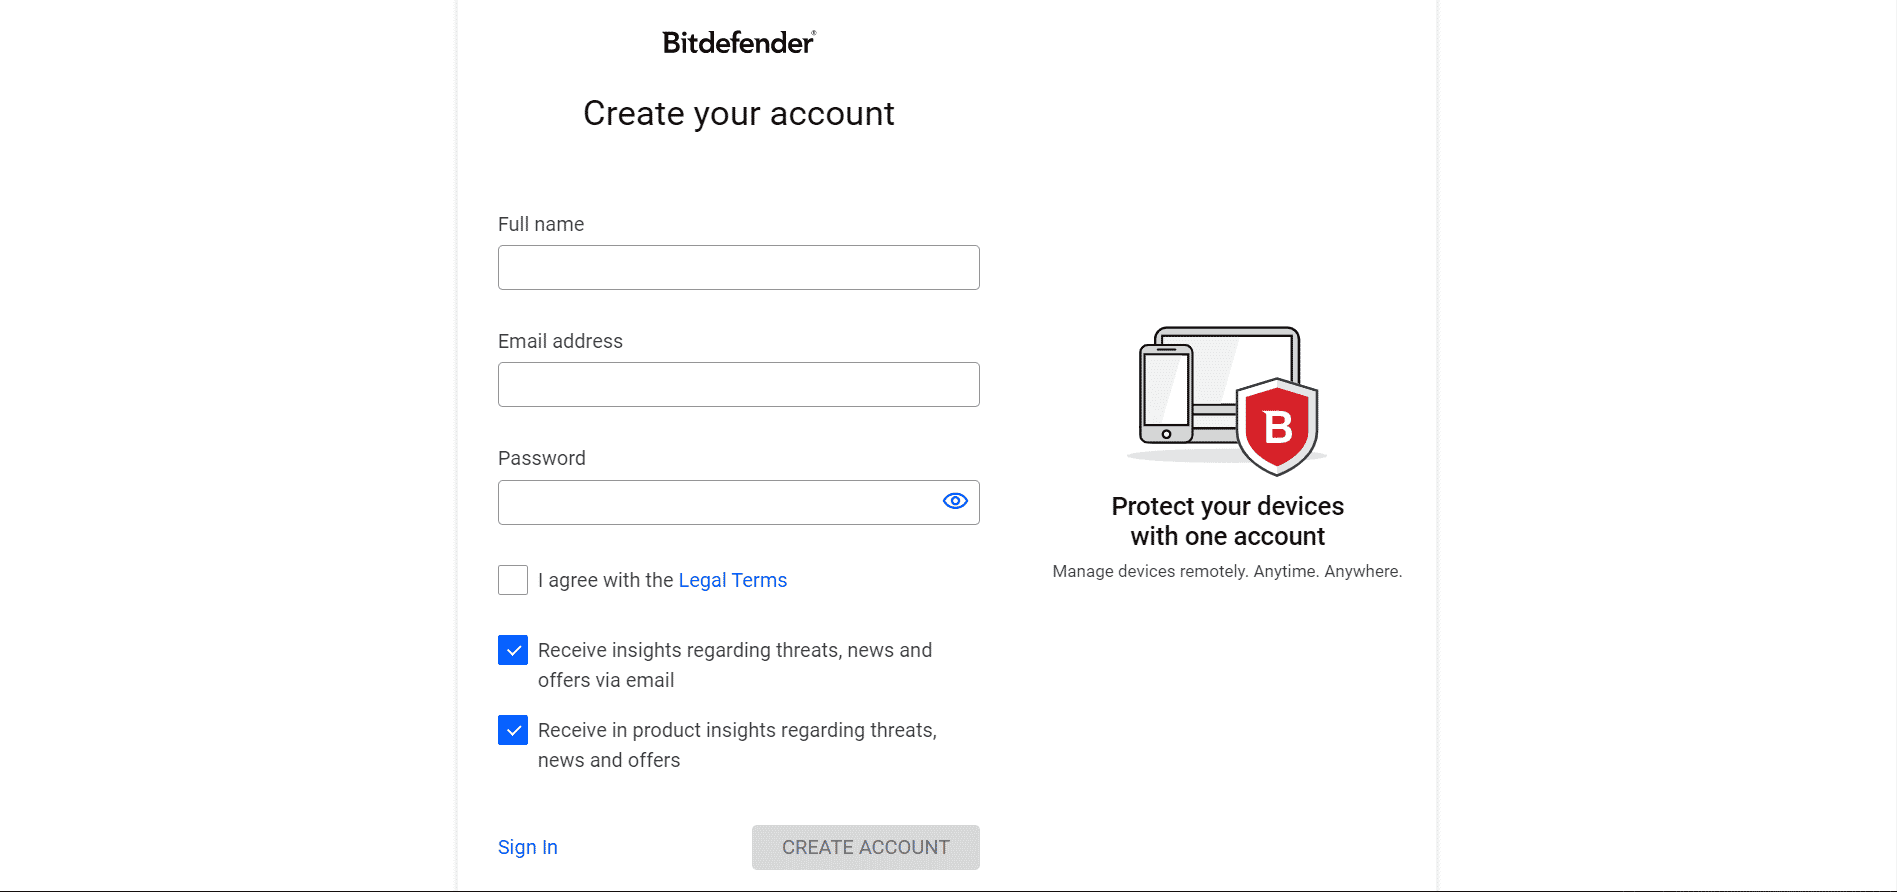 عملية التسجيل في Bitdefender Central سهلة وواضحة لجميع المستخدمين.